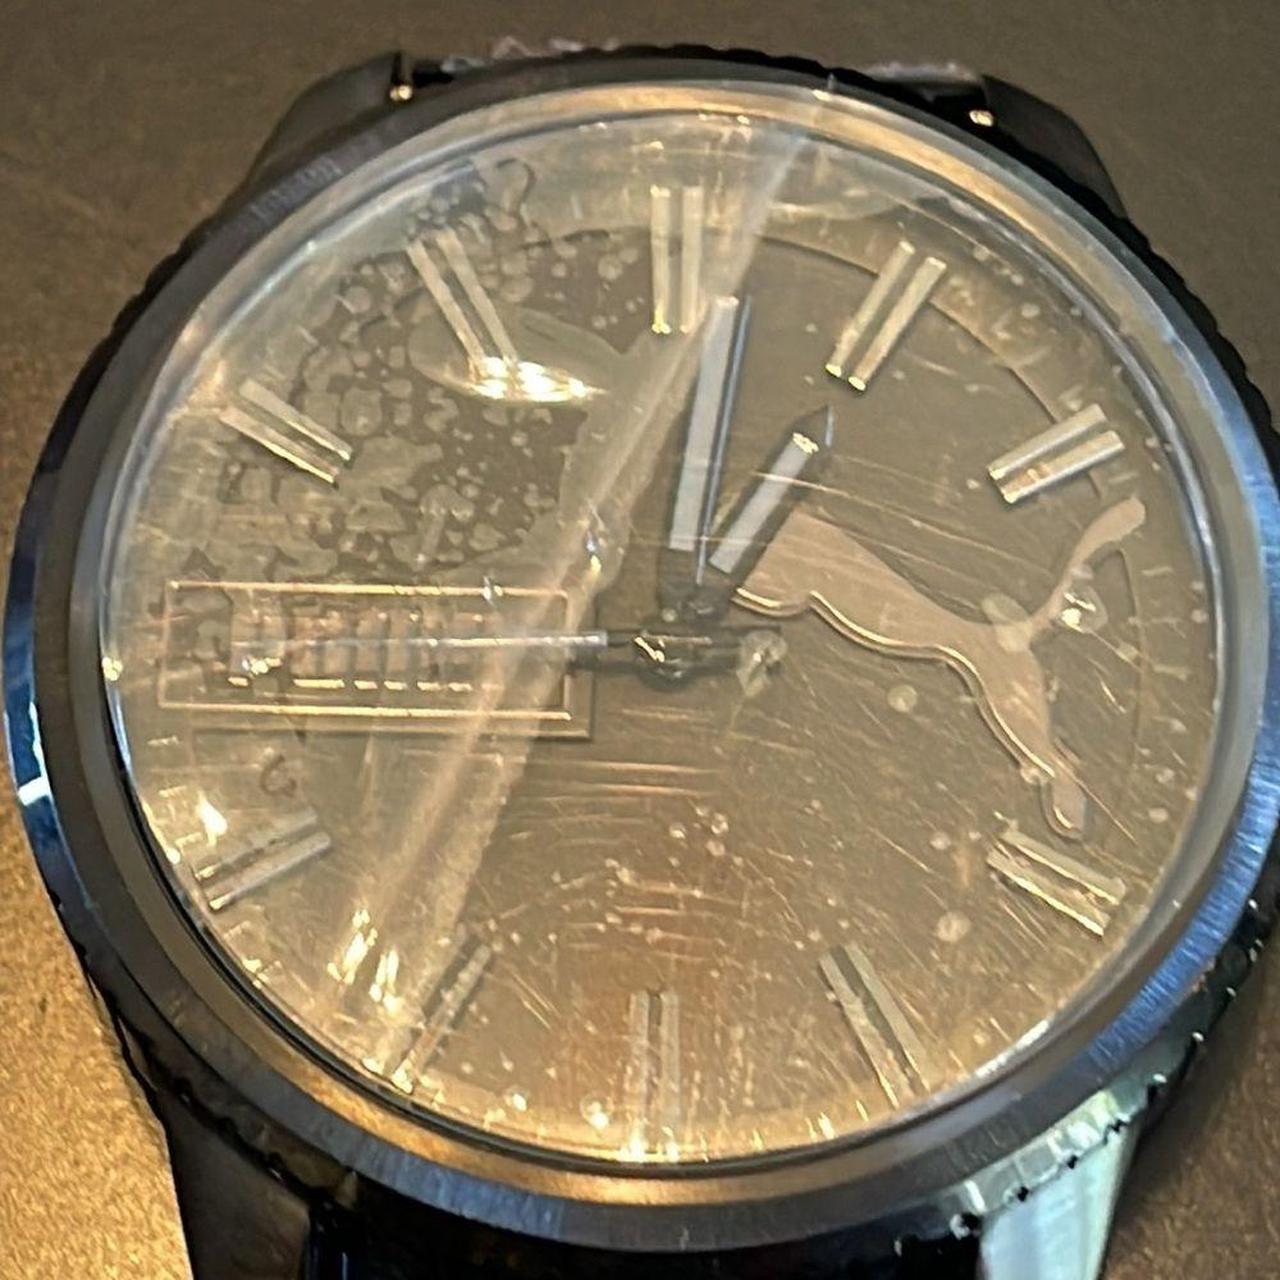 This 46mm ultra fresh watch features a black matte... - Depop